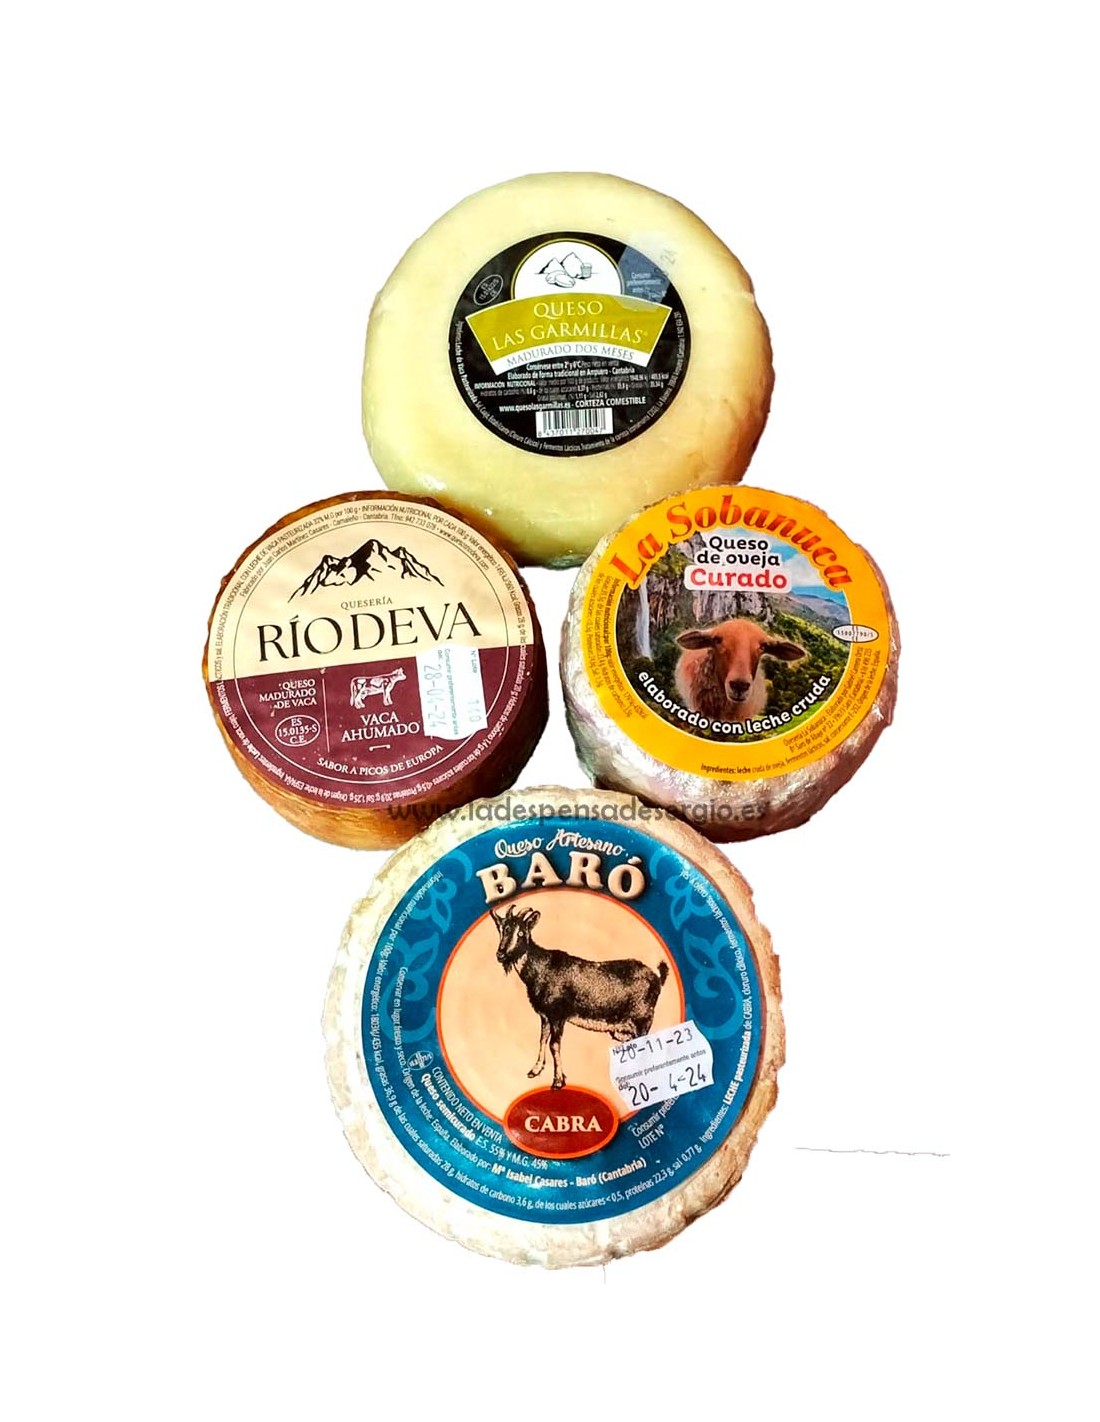 La mejor tabla de quesos de Cantabria 【ENVIO GRATIS】